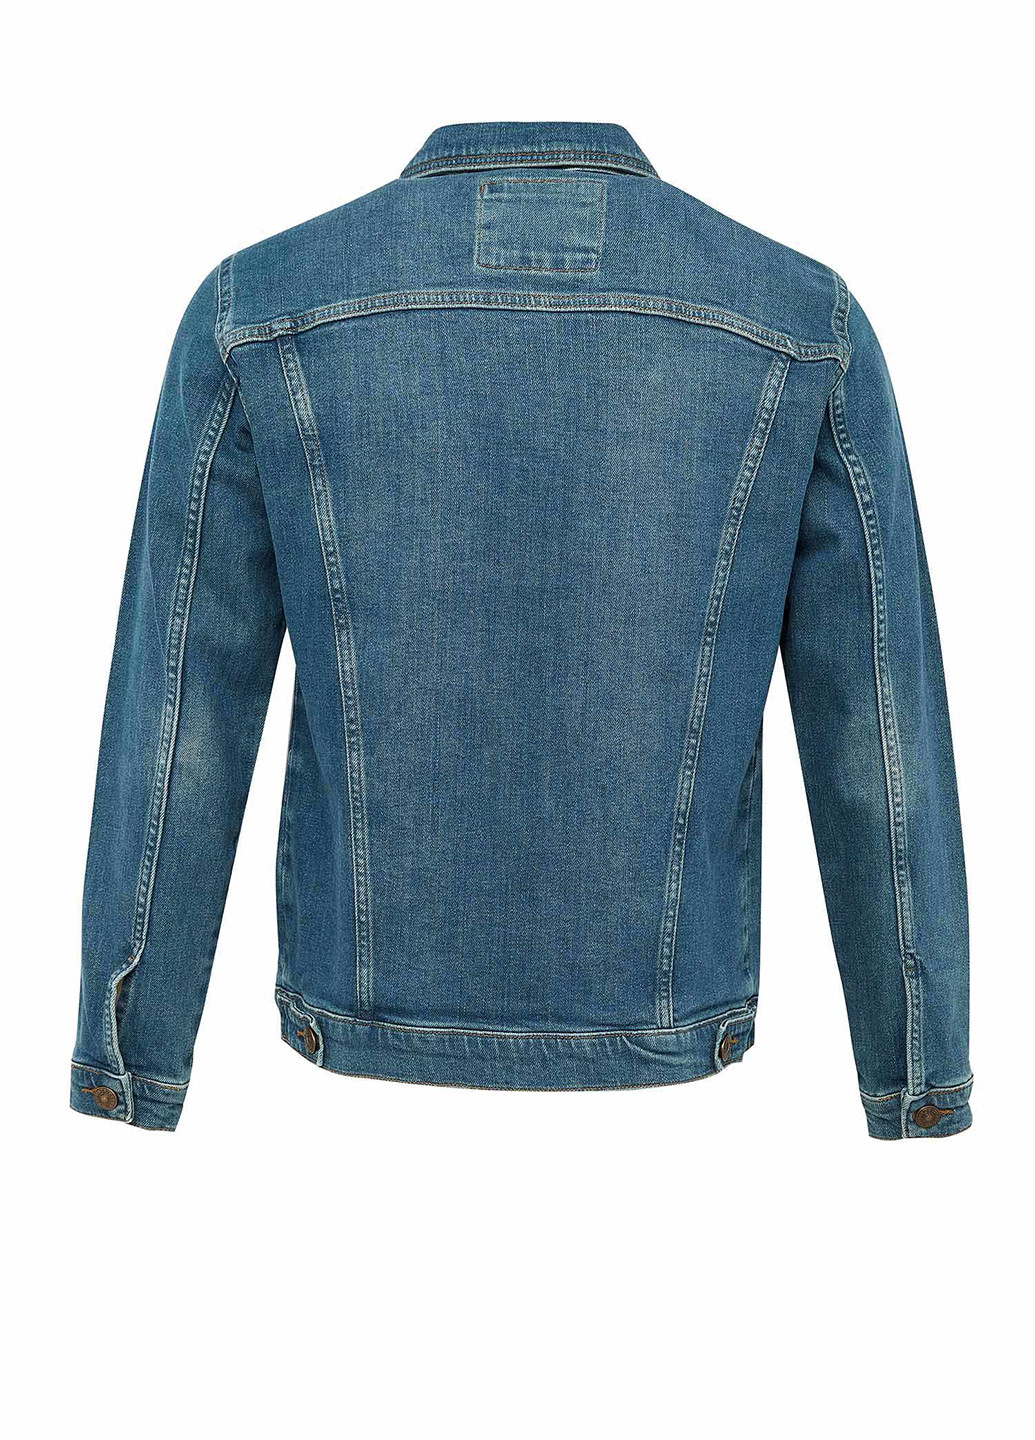 Пиджак DeFacto синий джинсовый хлопок